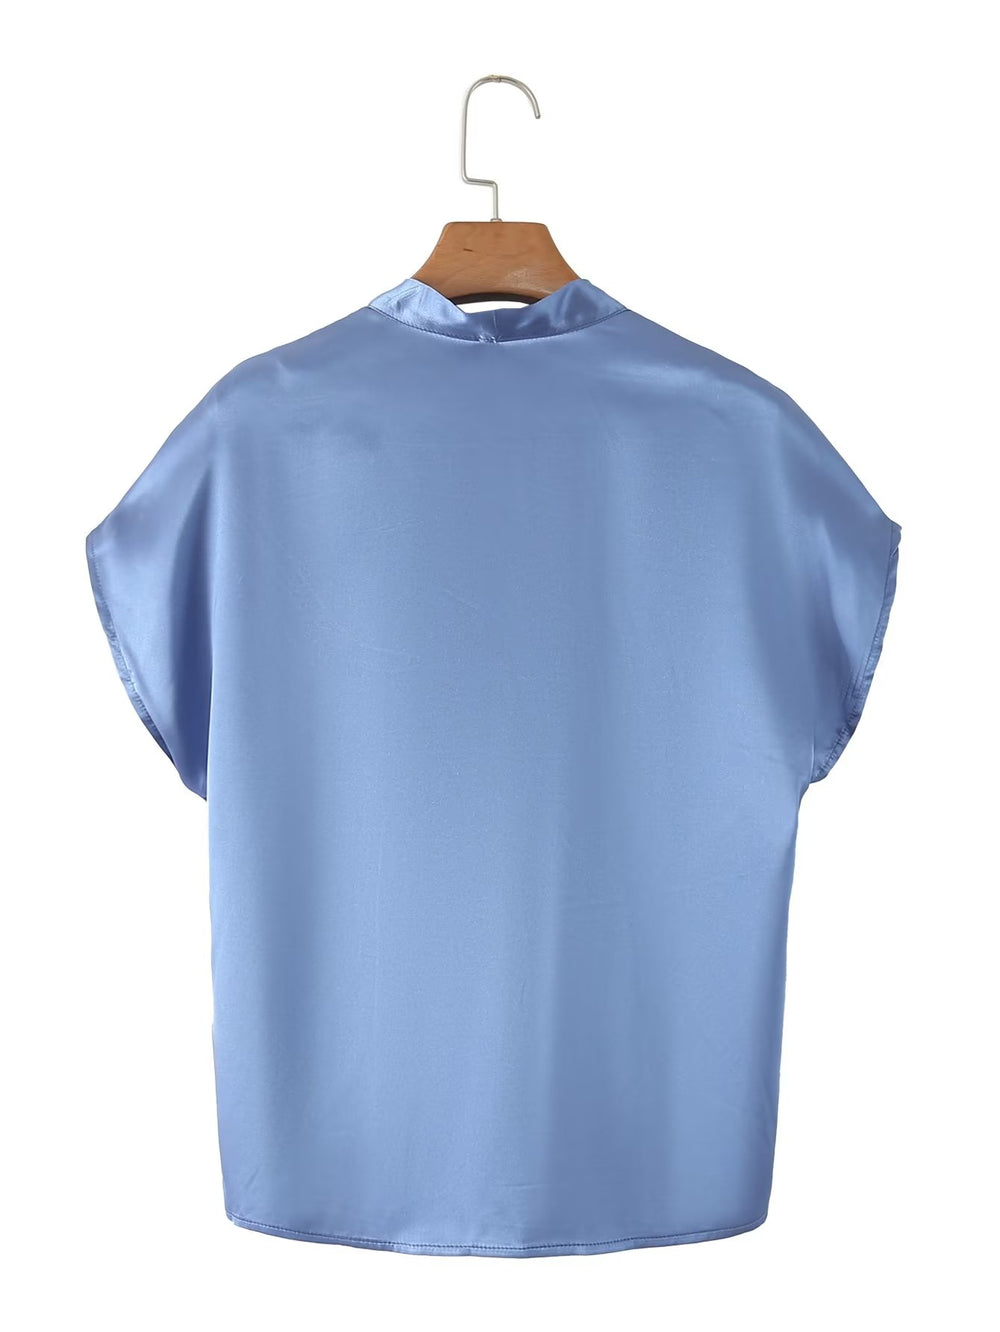 Shirt Women Short Sleeve Office V neck Shirt Western Mulberry Silk Top